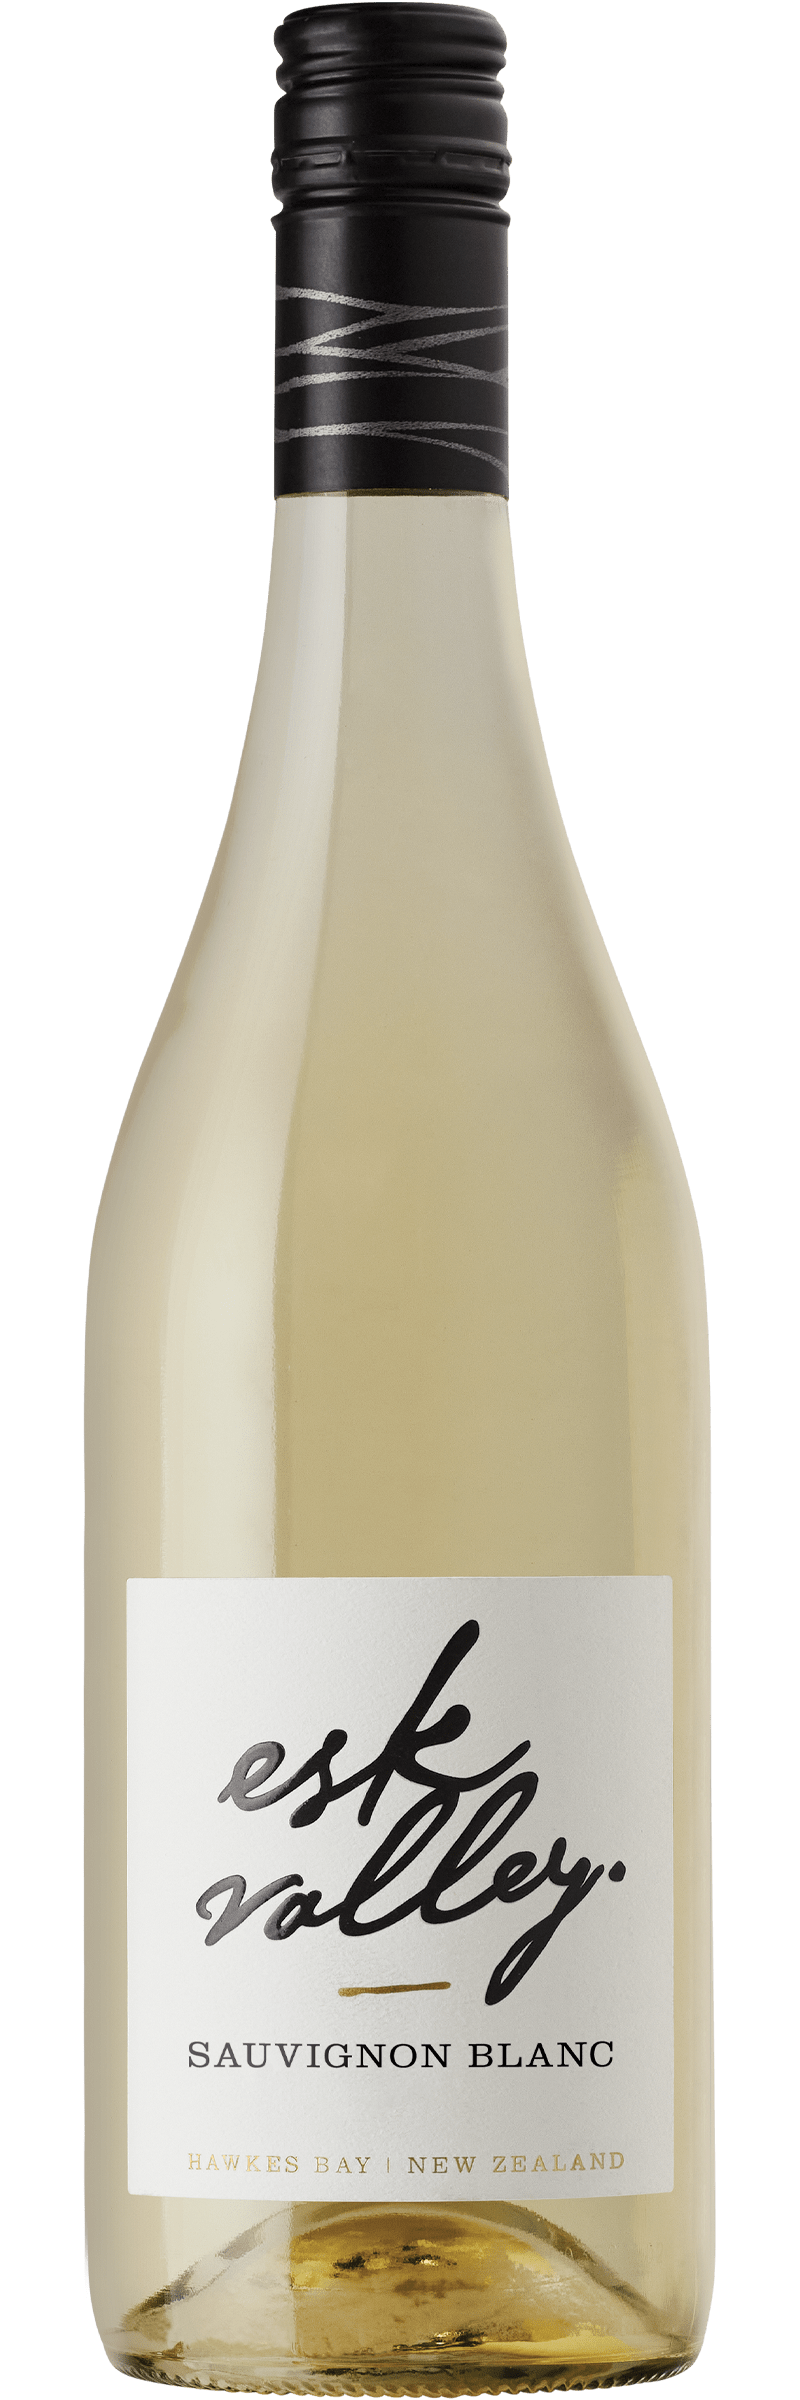 Esk Valley Sauvignon Blanc 2021 75cl